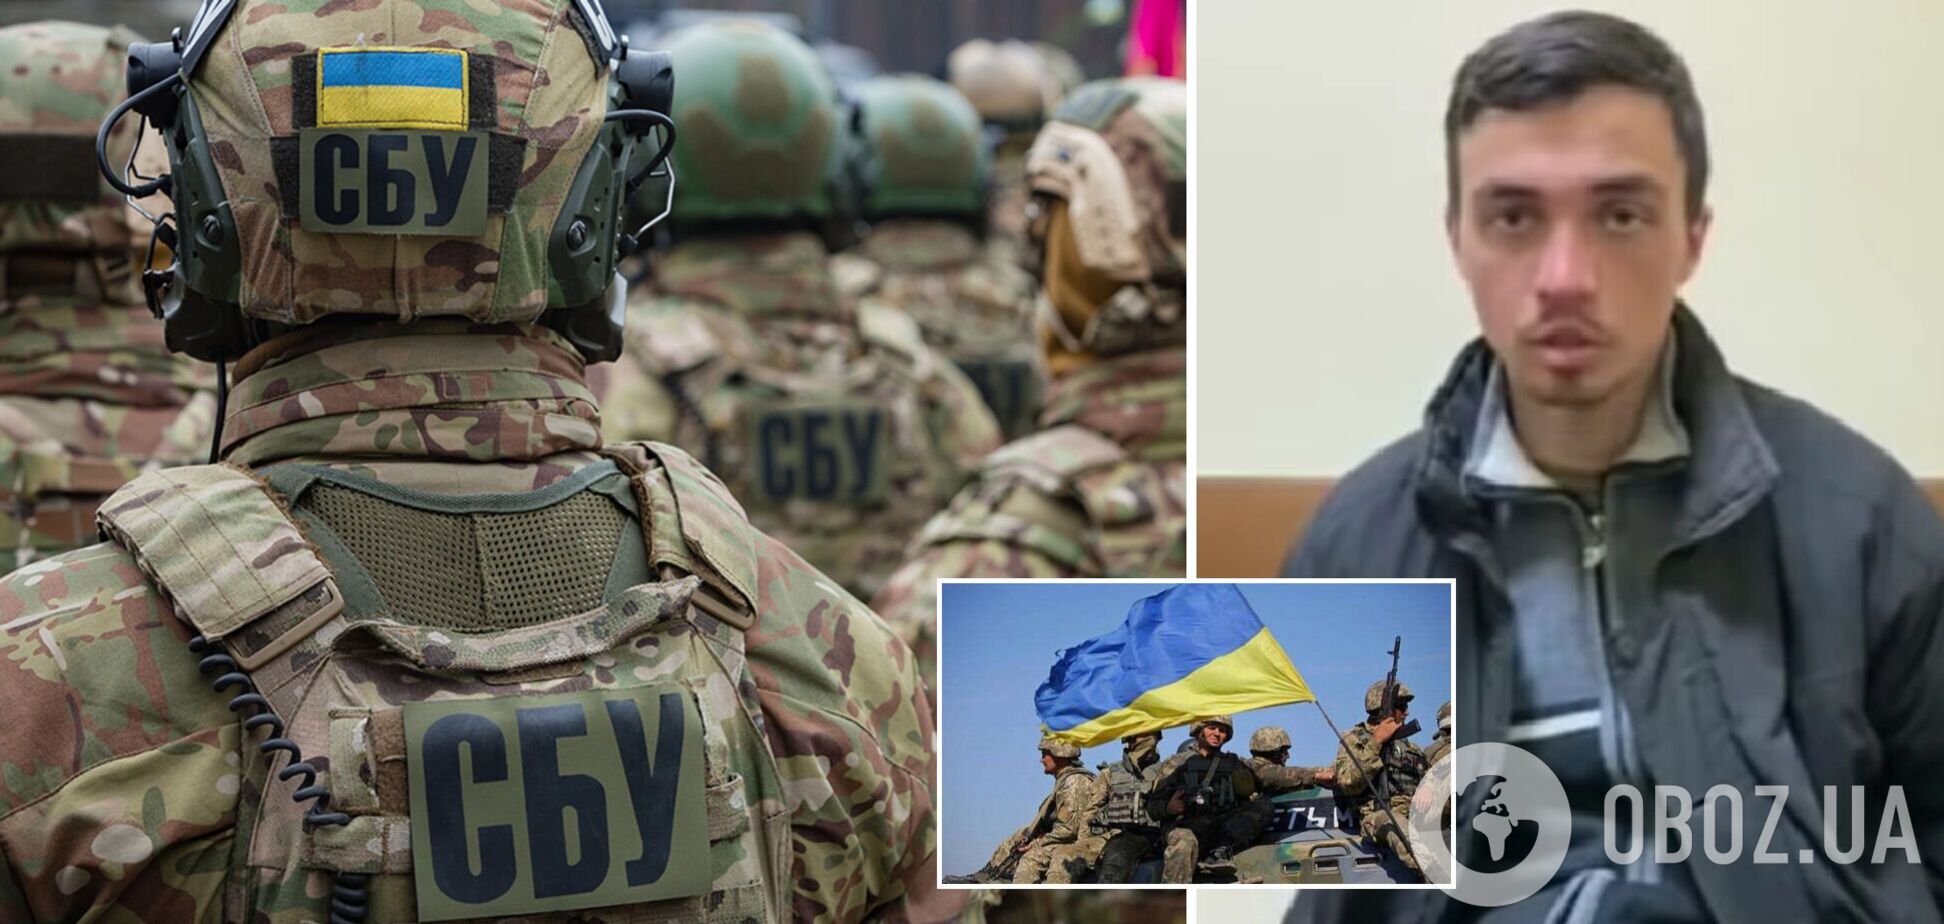 'Це не та війна, яка нам потрібна': СБУ схопила розвідника РФ, який прямував до Києва, він намагався виправдатися. Відео